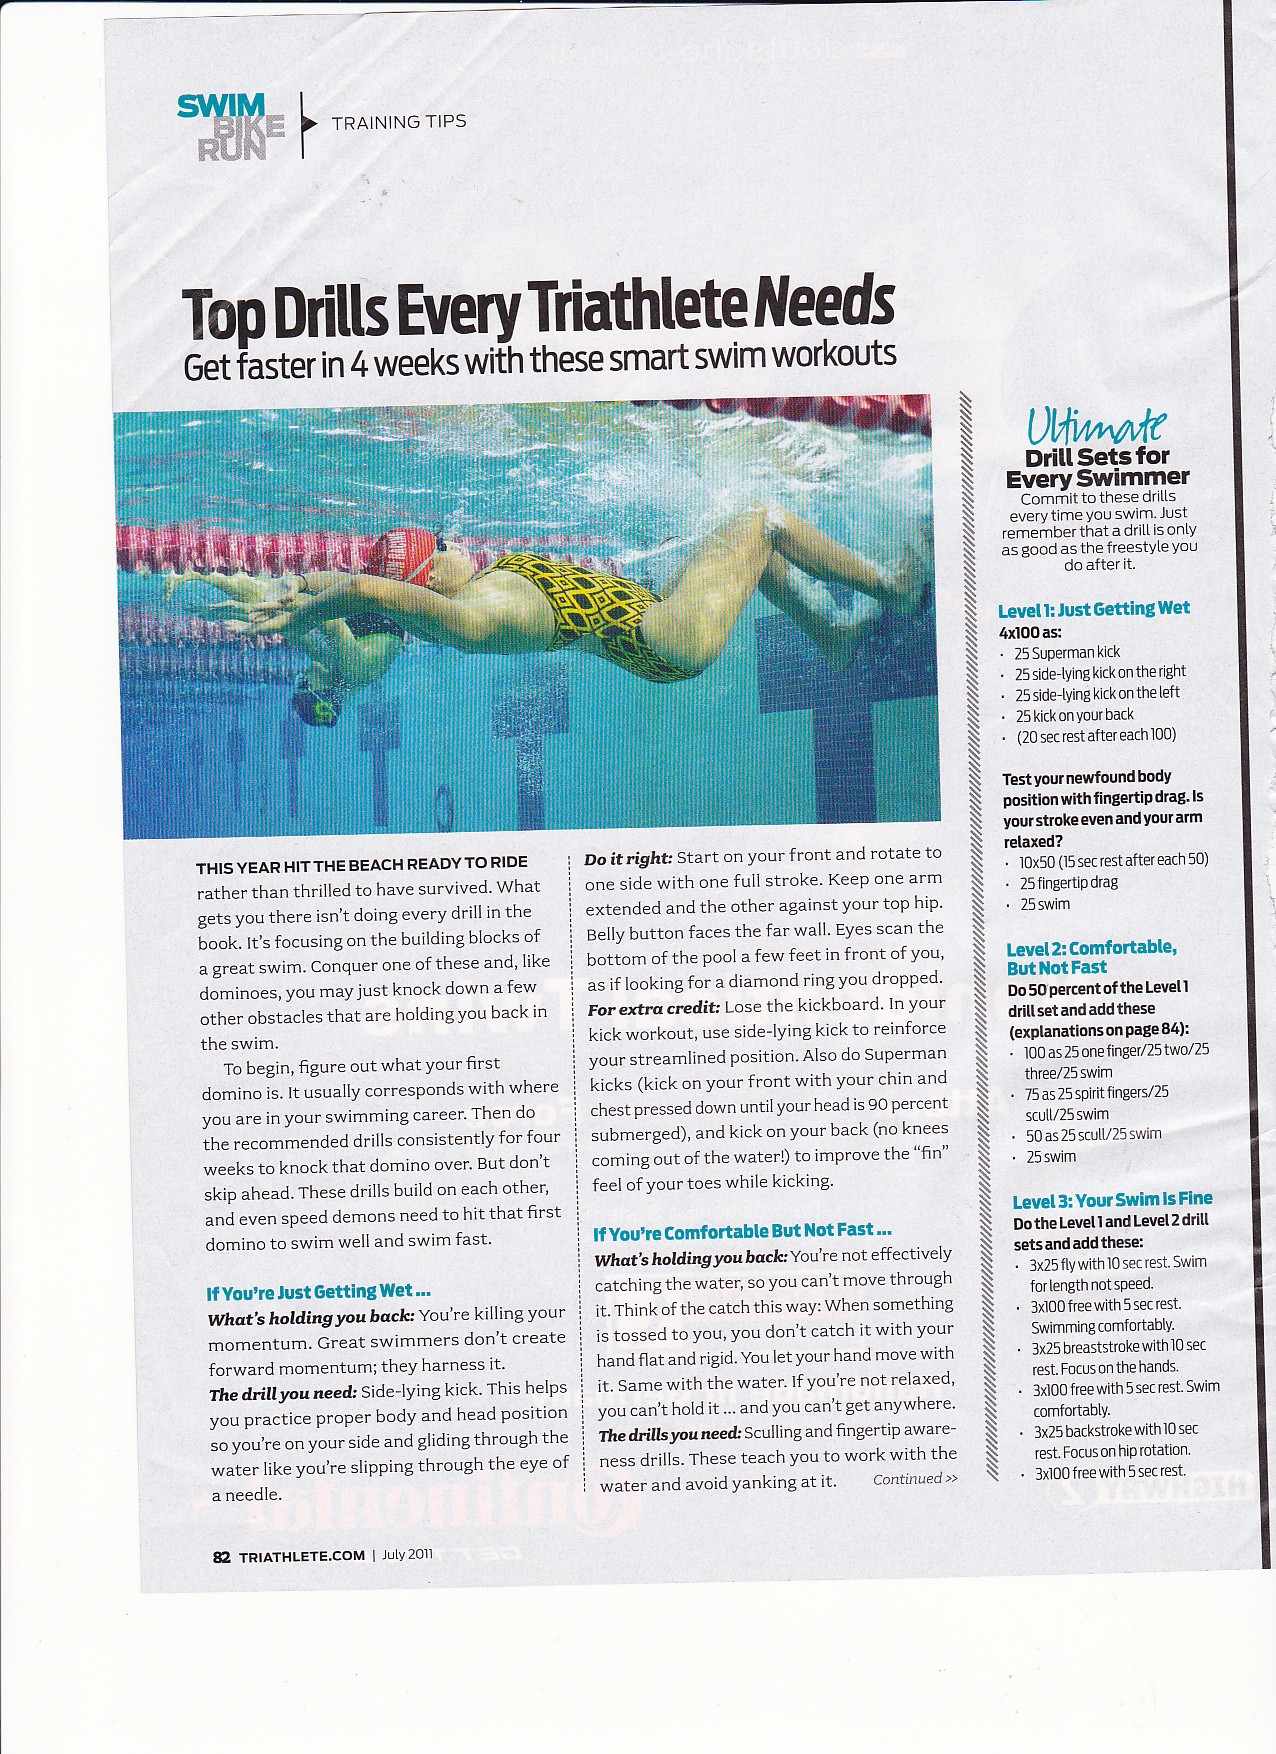 Top Swim Drills for Triathletes